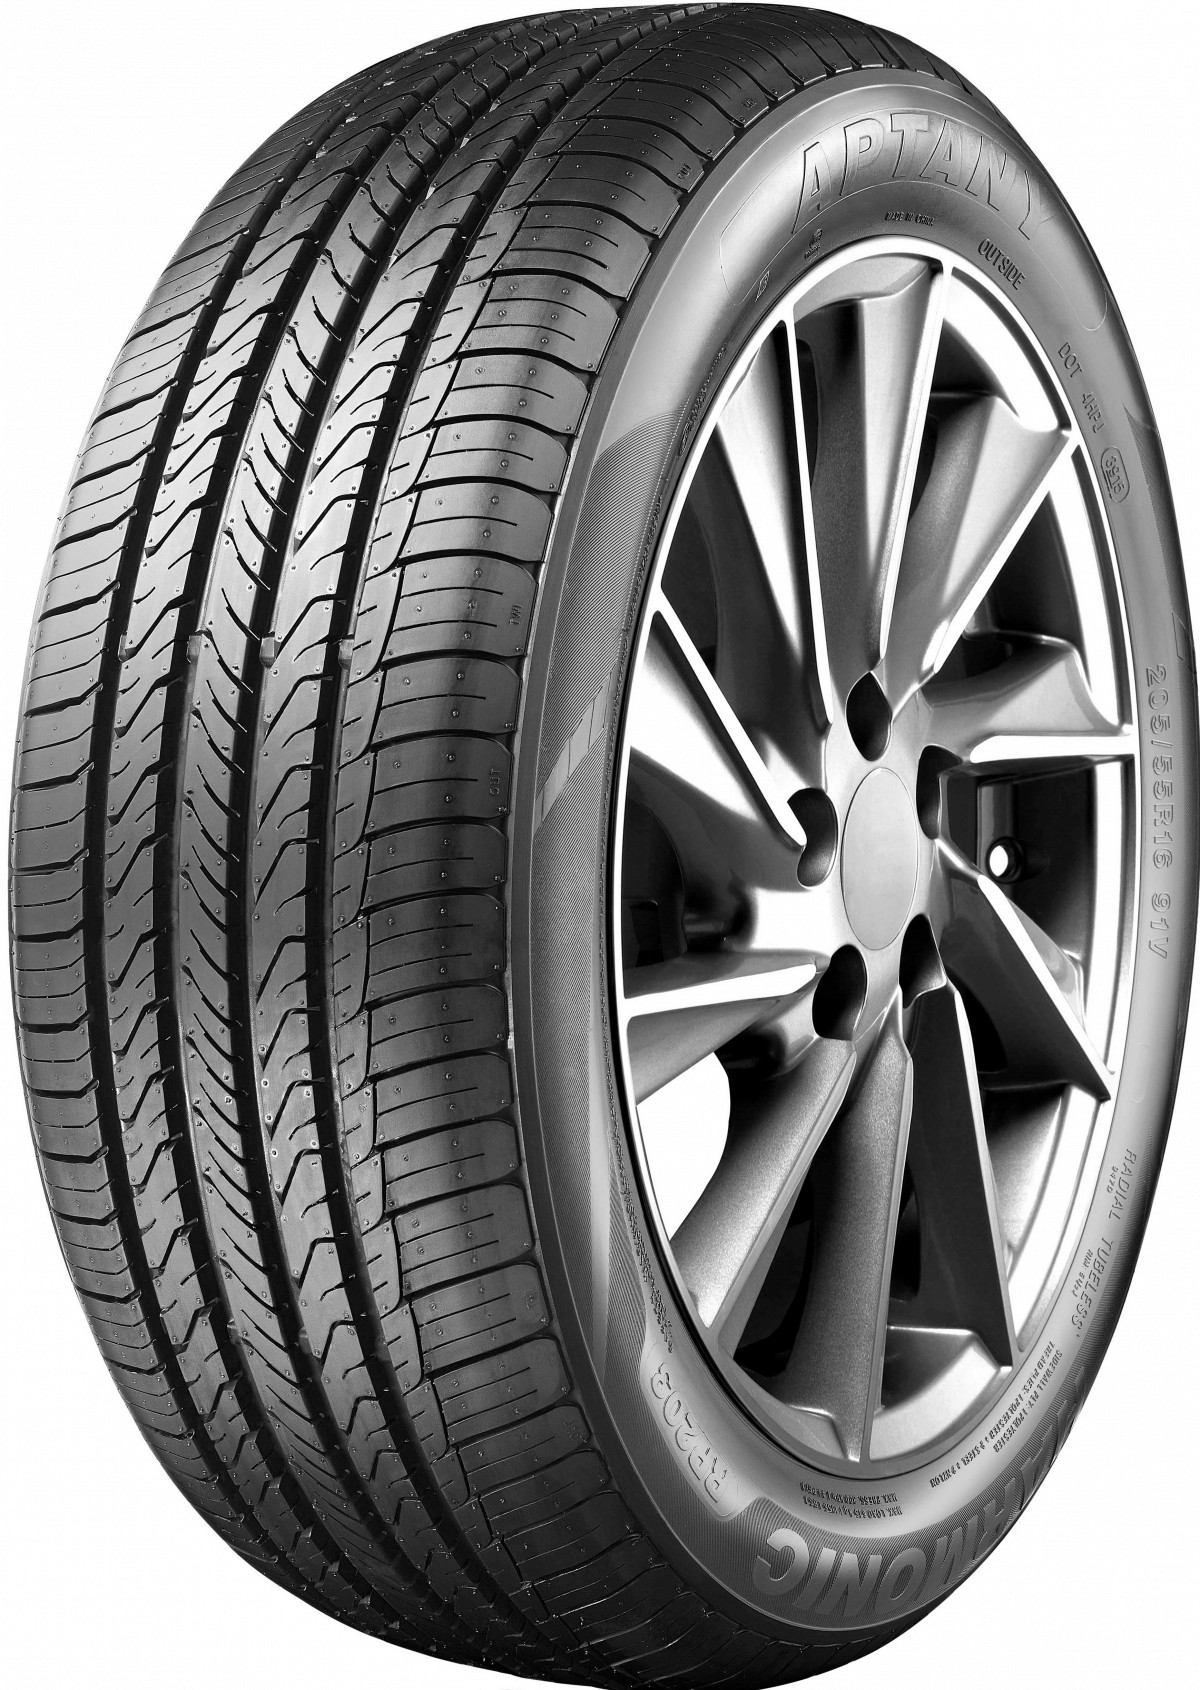 RP203 Aptany EAN:6950306346194 Car tyres